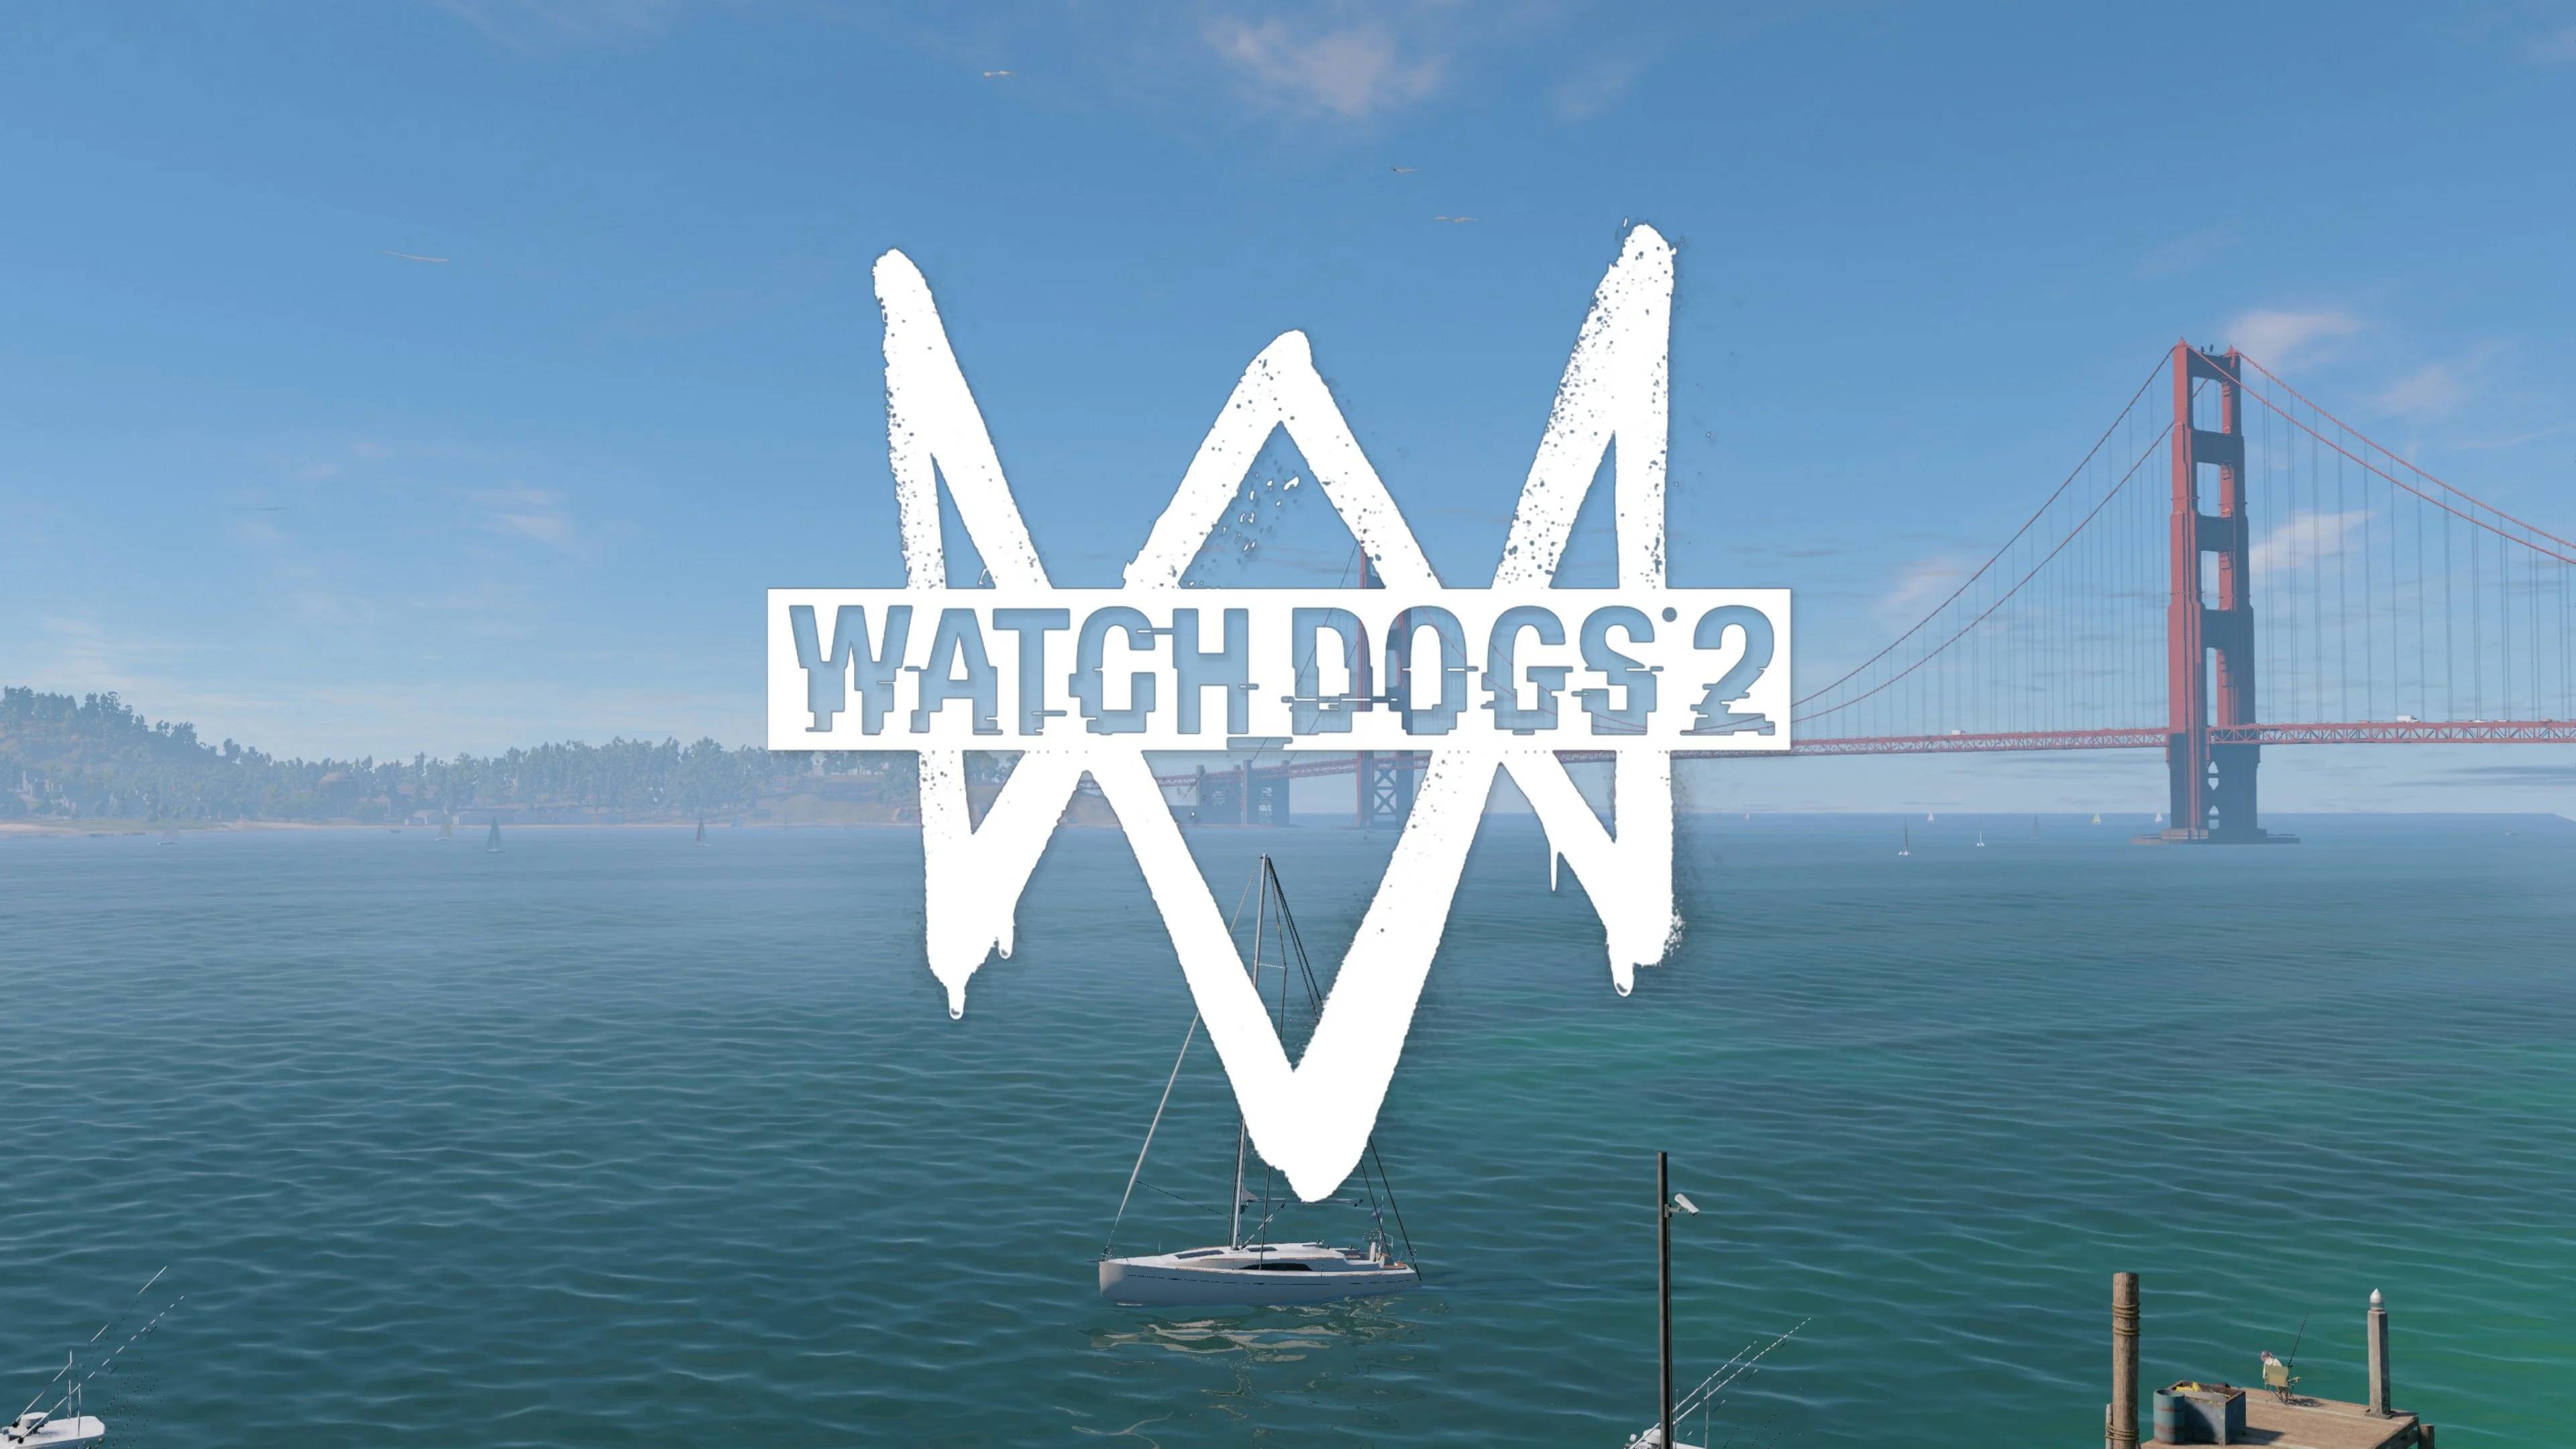 Редакция «Канобу» получила копию хакерского экшена Watch Dogs 2 меньше, чем за сутки до релиза, так что подробная рецензия выйдет к концу этой недели. А пока мы решили поделиться первыми впечатлениями о новинке от Ubisoft, чтобы помочь самым нетерпеливым игрокам определиться с выбором — брать или подождать.